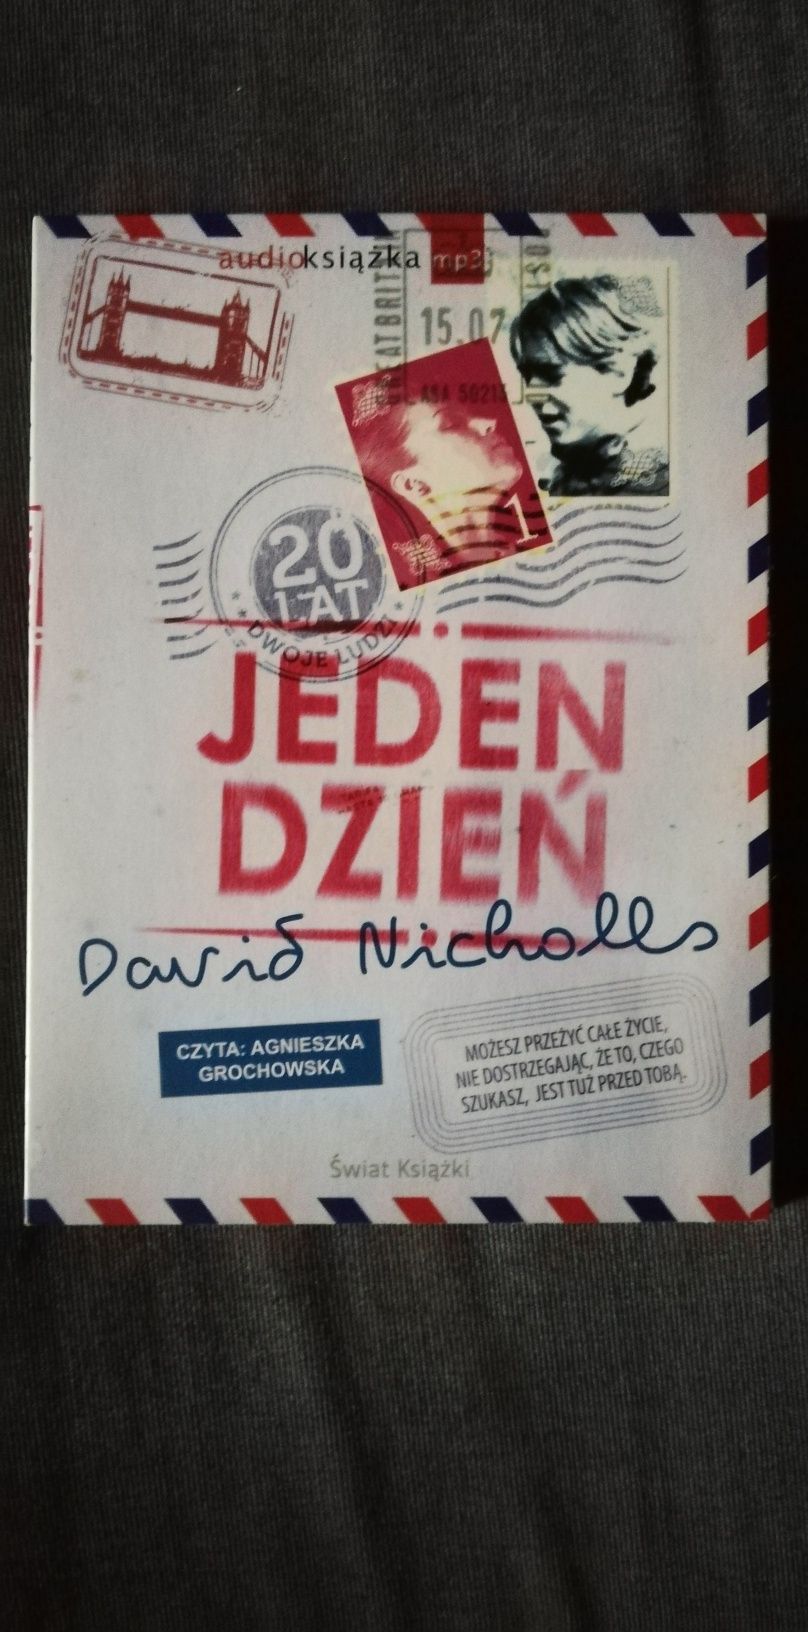 Jeden dzień-Dawid Nicholls czyta Agnieszka Grochowska- na CD